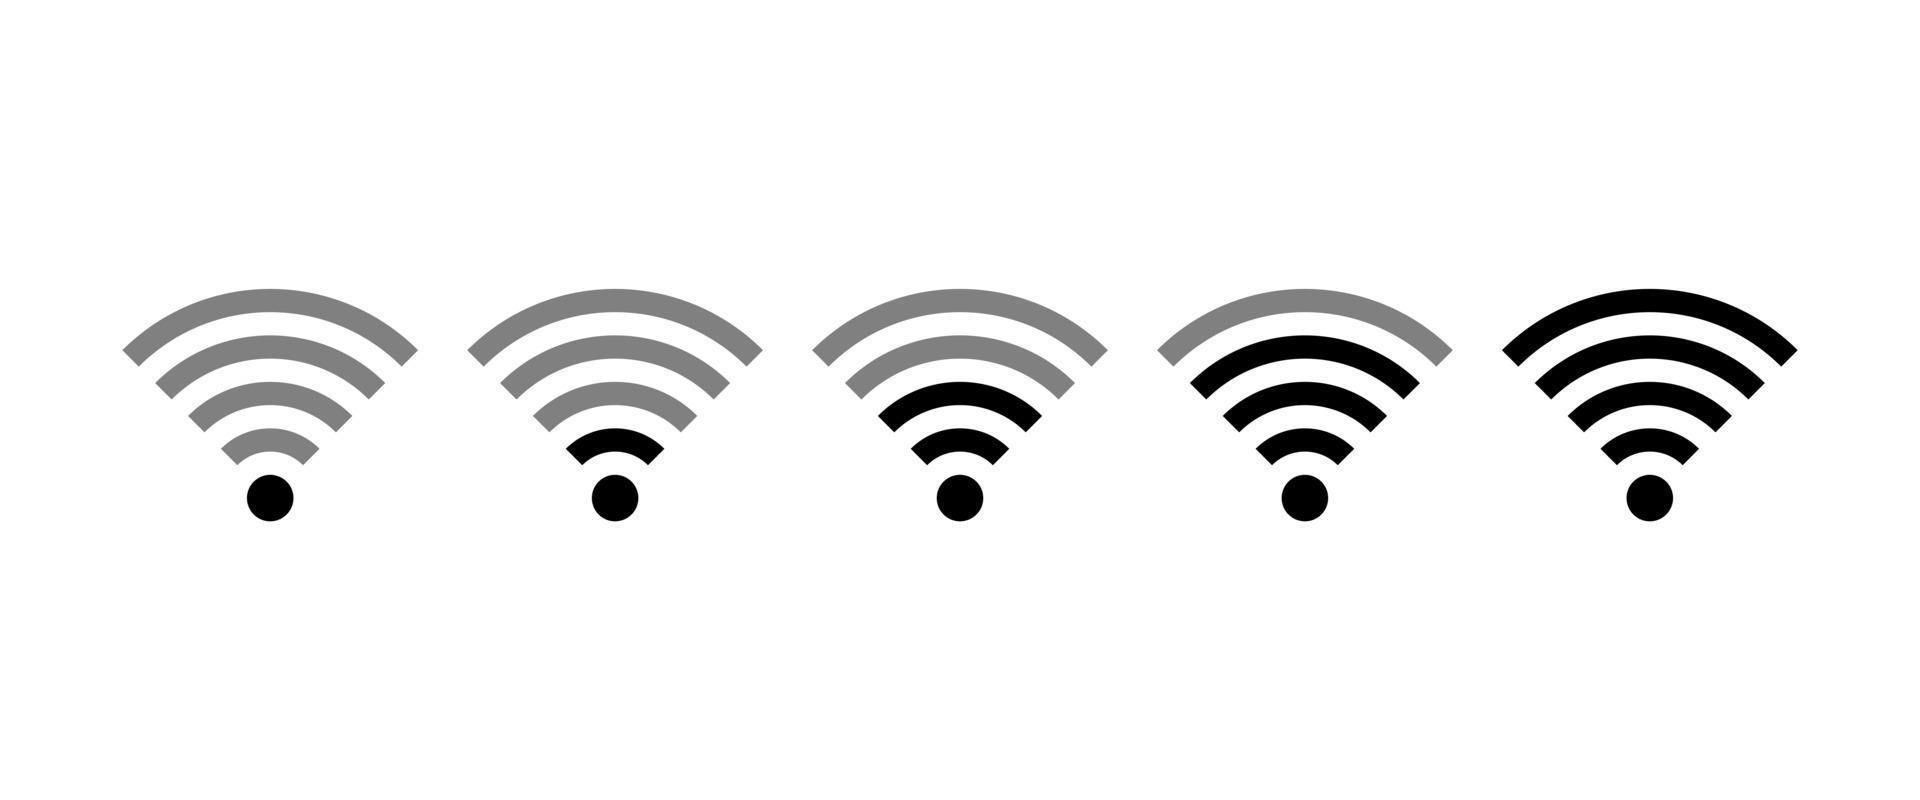 Quitan el Wi-Fi en todo el mundo durante 1 año